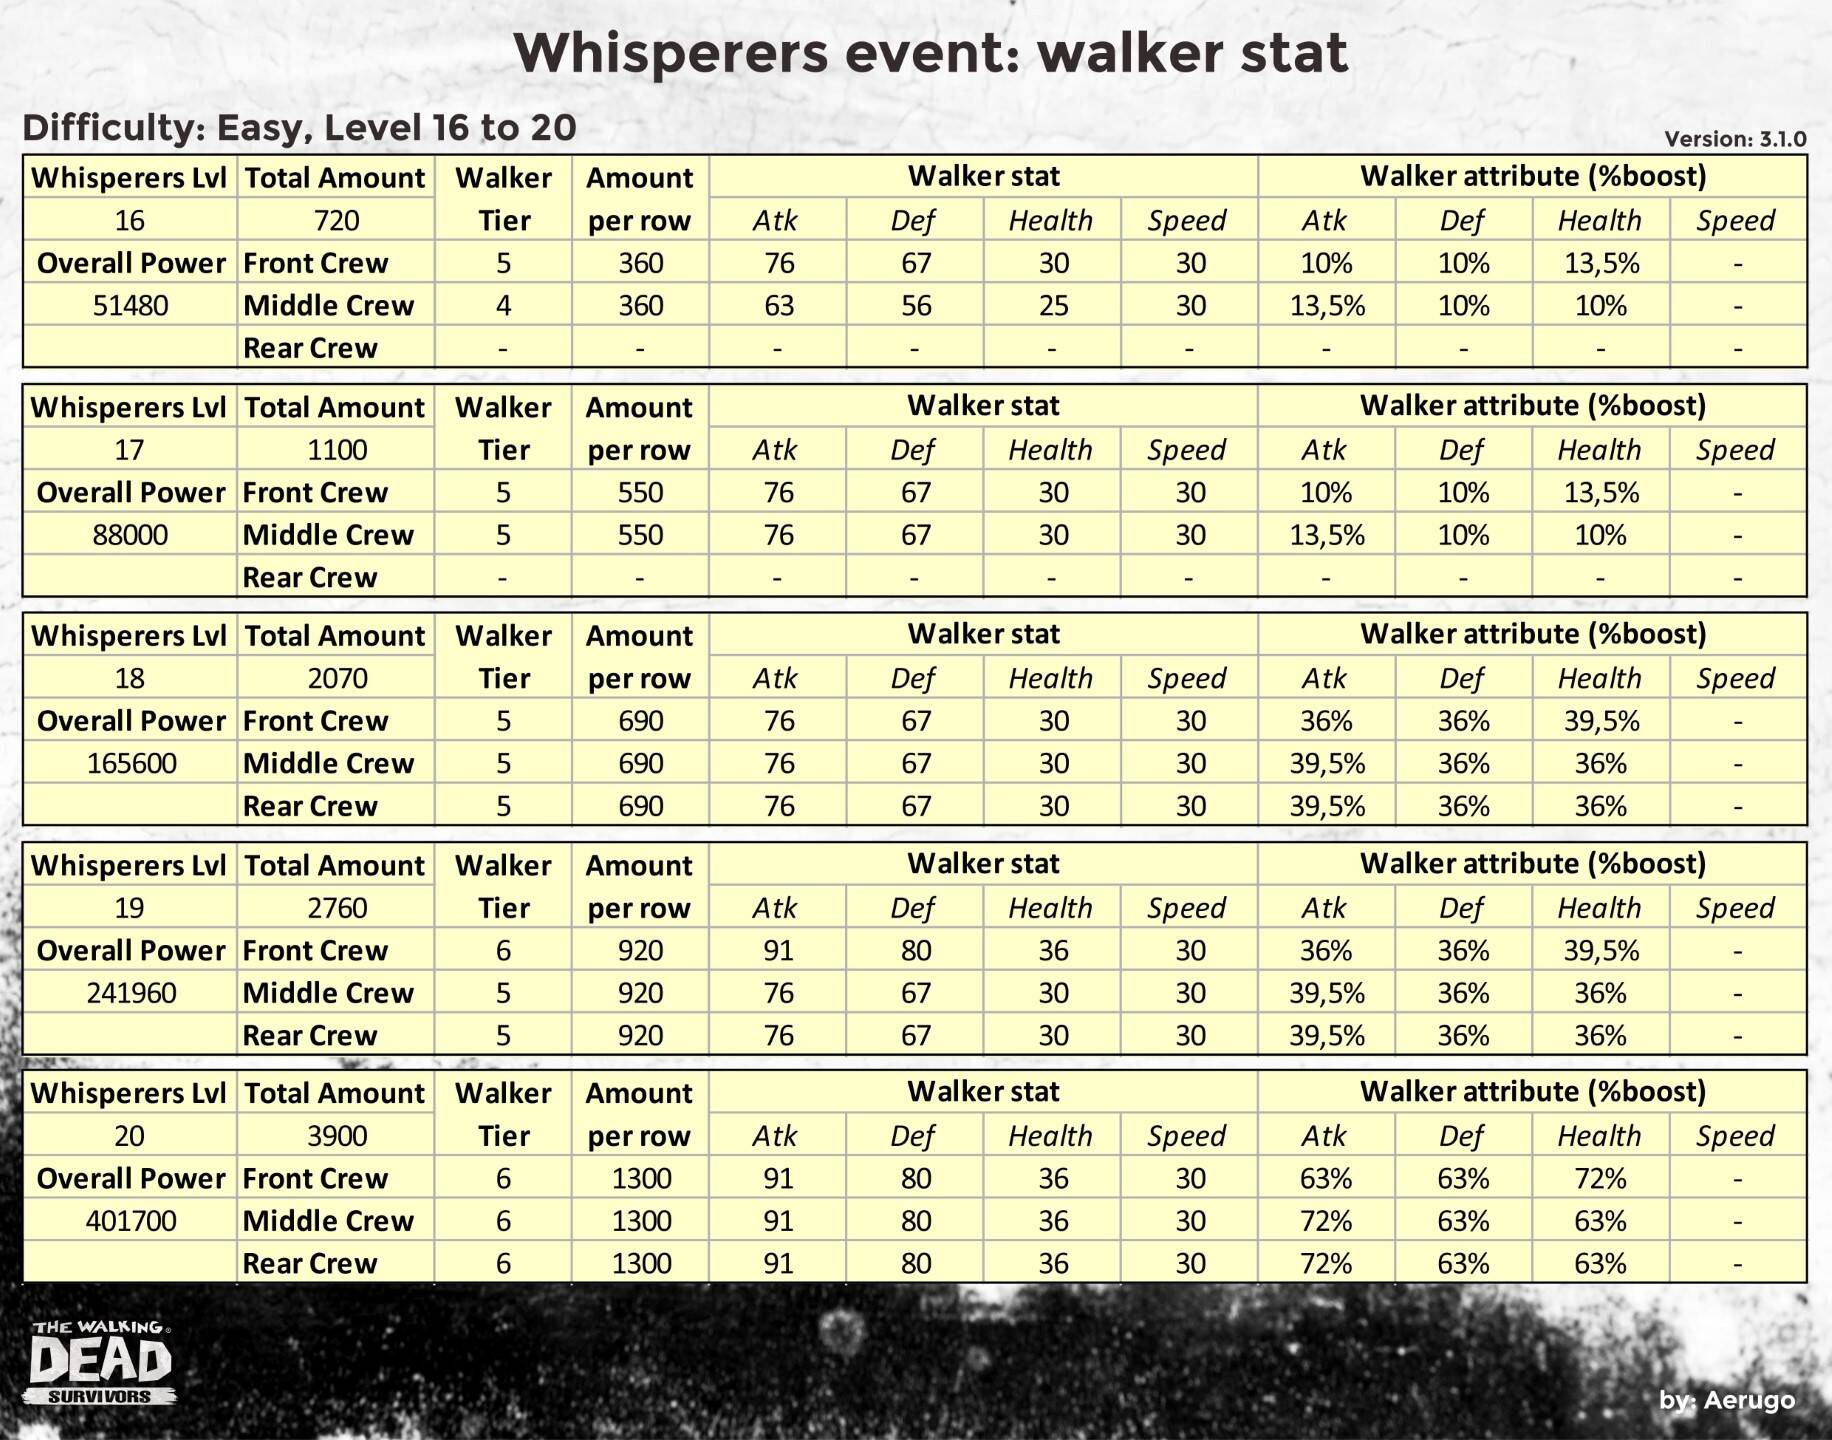 Whisperers_walkerstat_v3.1.0_part04 (1).jpg